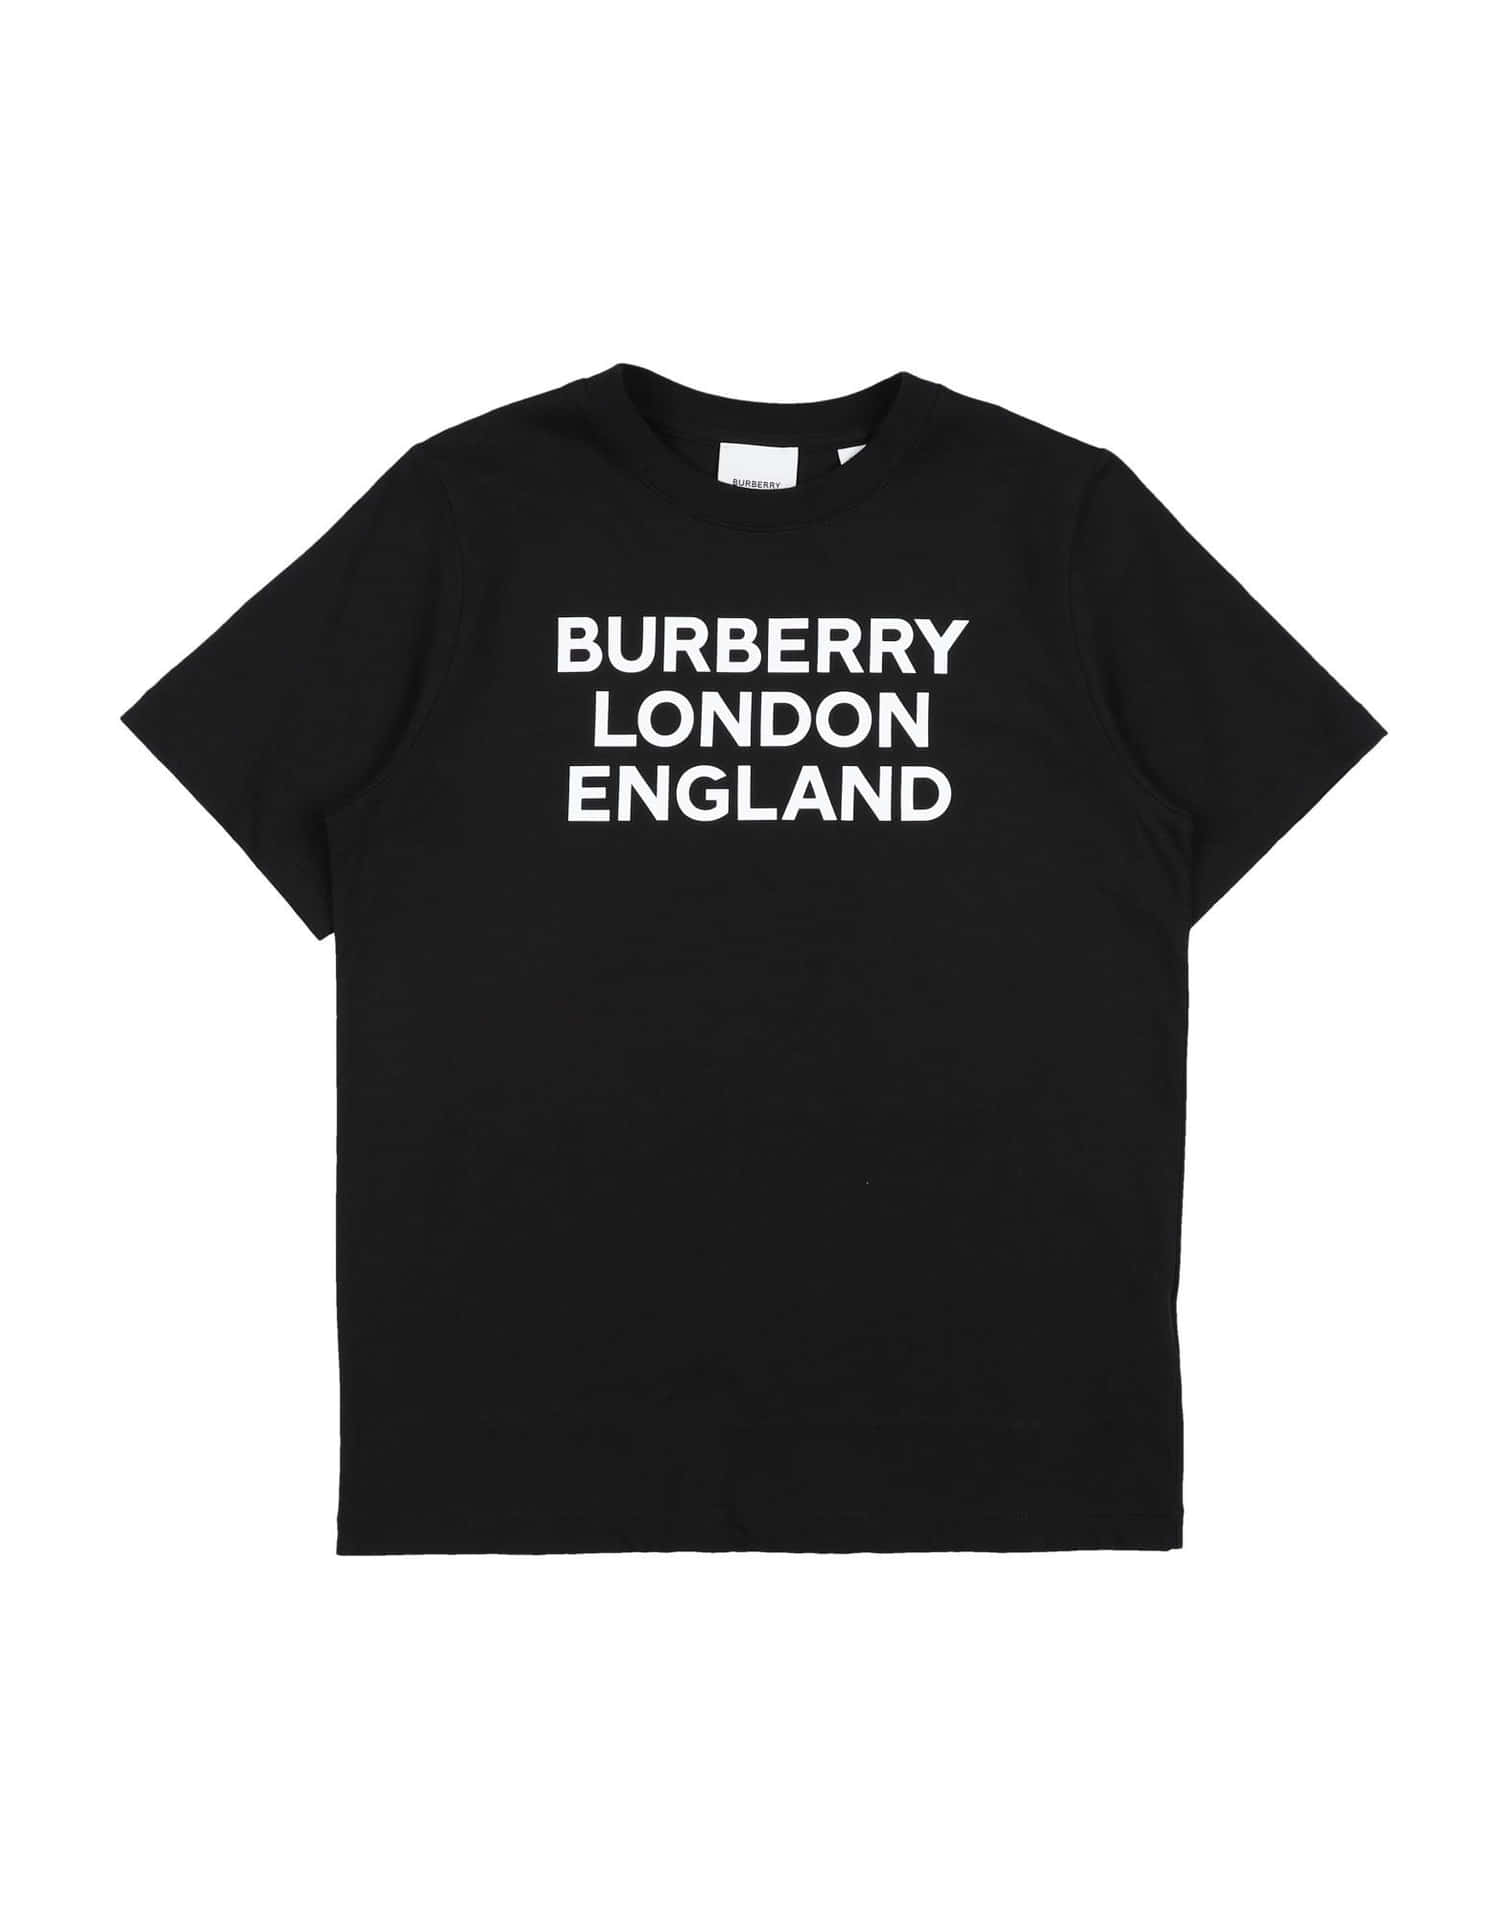 Burberry England T-shirt Black